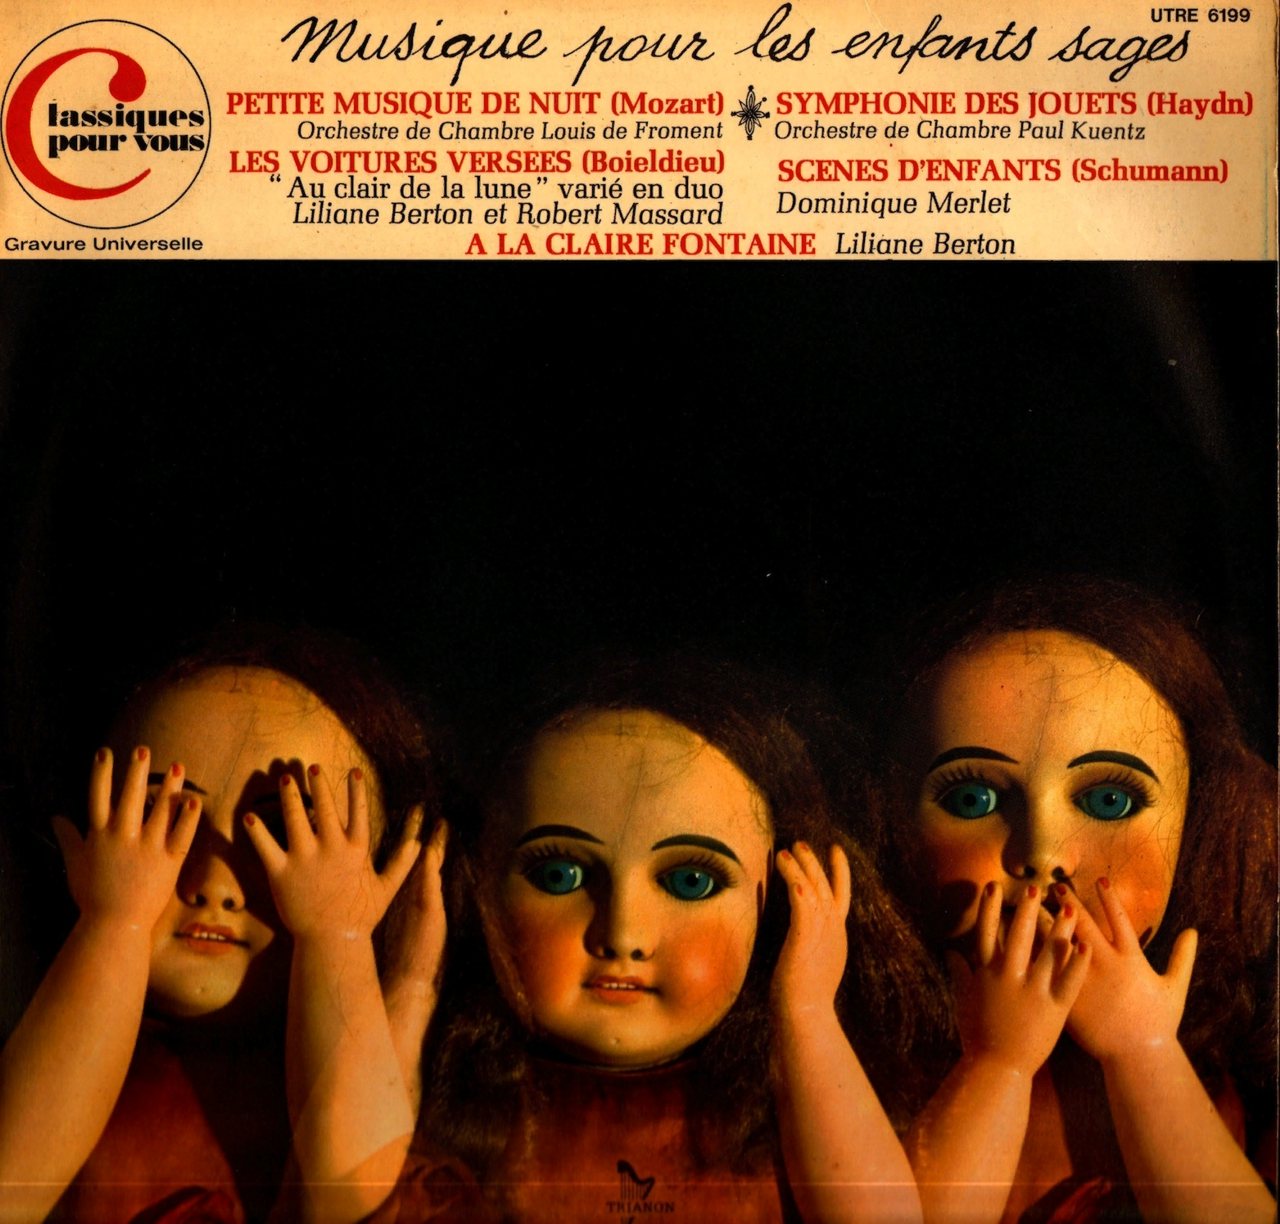 Обложка пластинки «Musique Pour Les Enfants Sages» (Trianon, Франция) с тремя куклами в позах трех обезьян